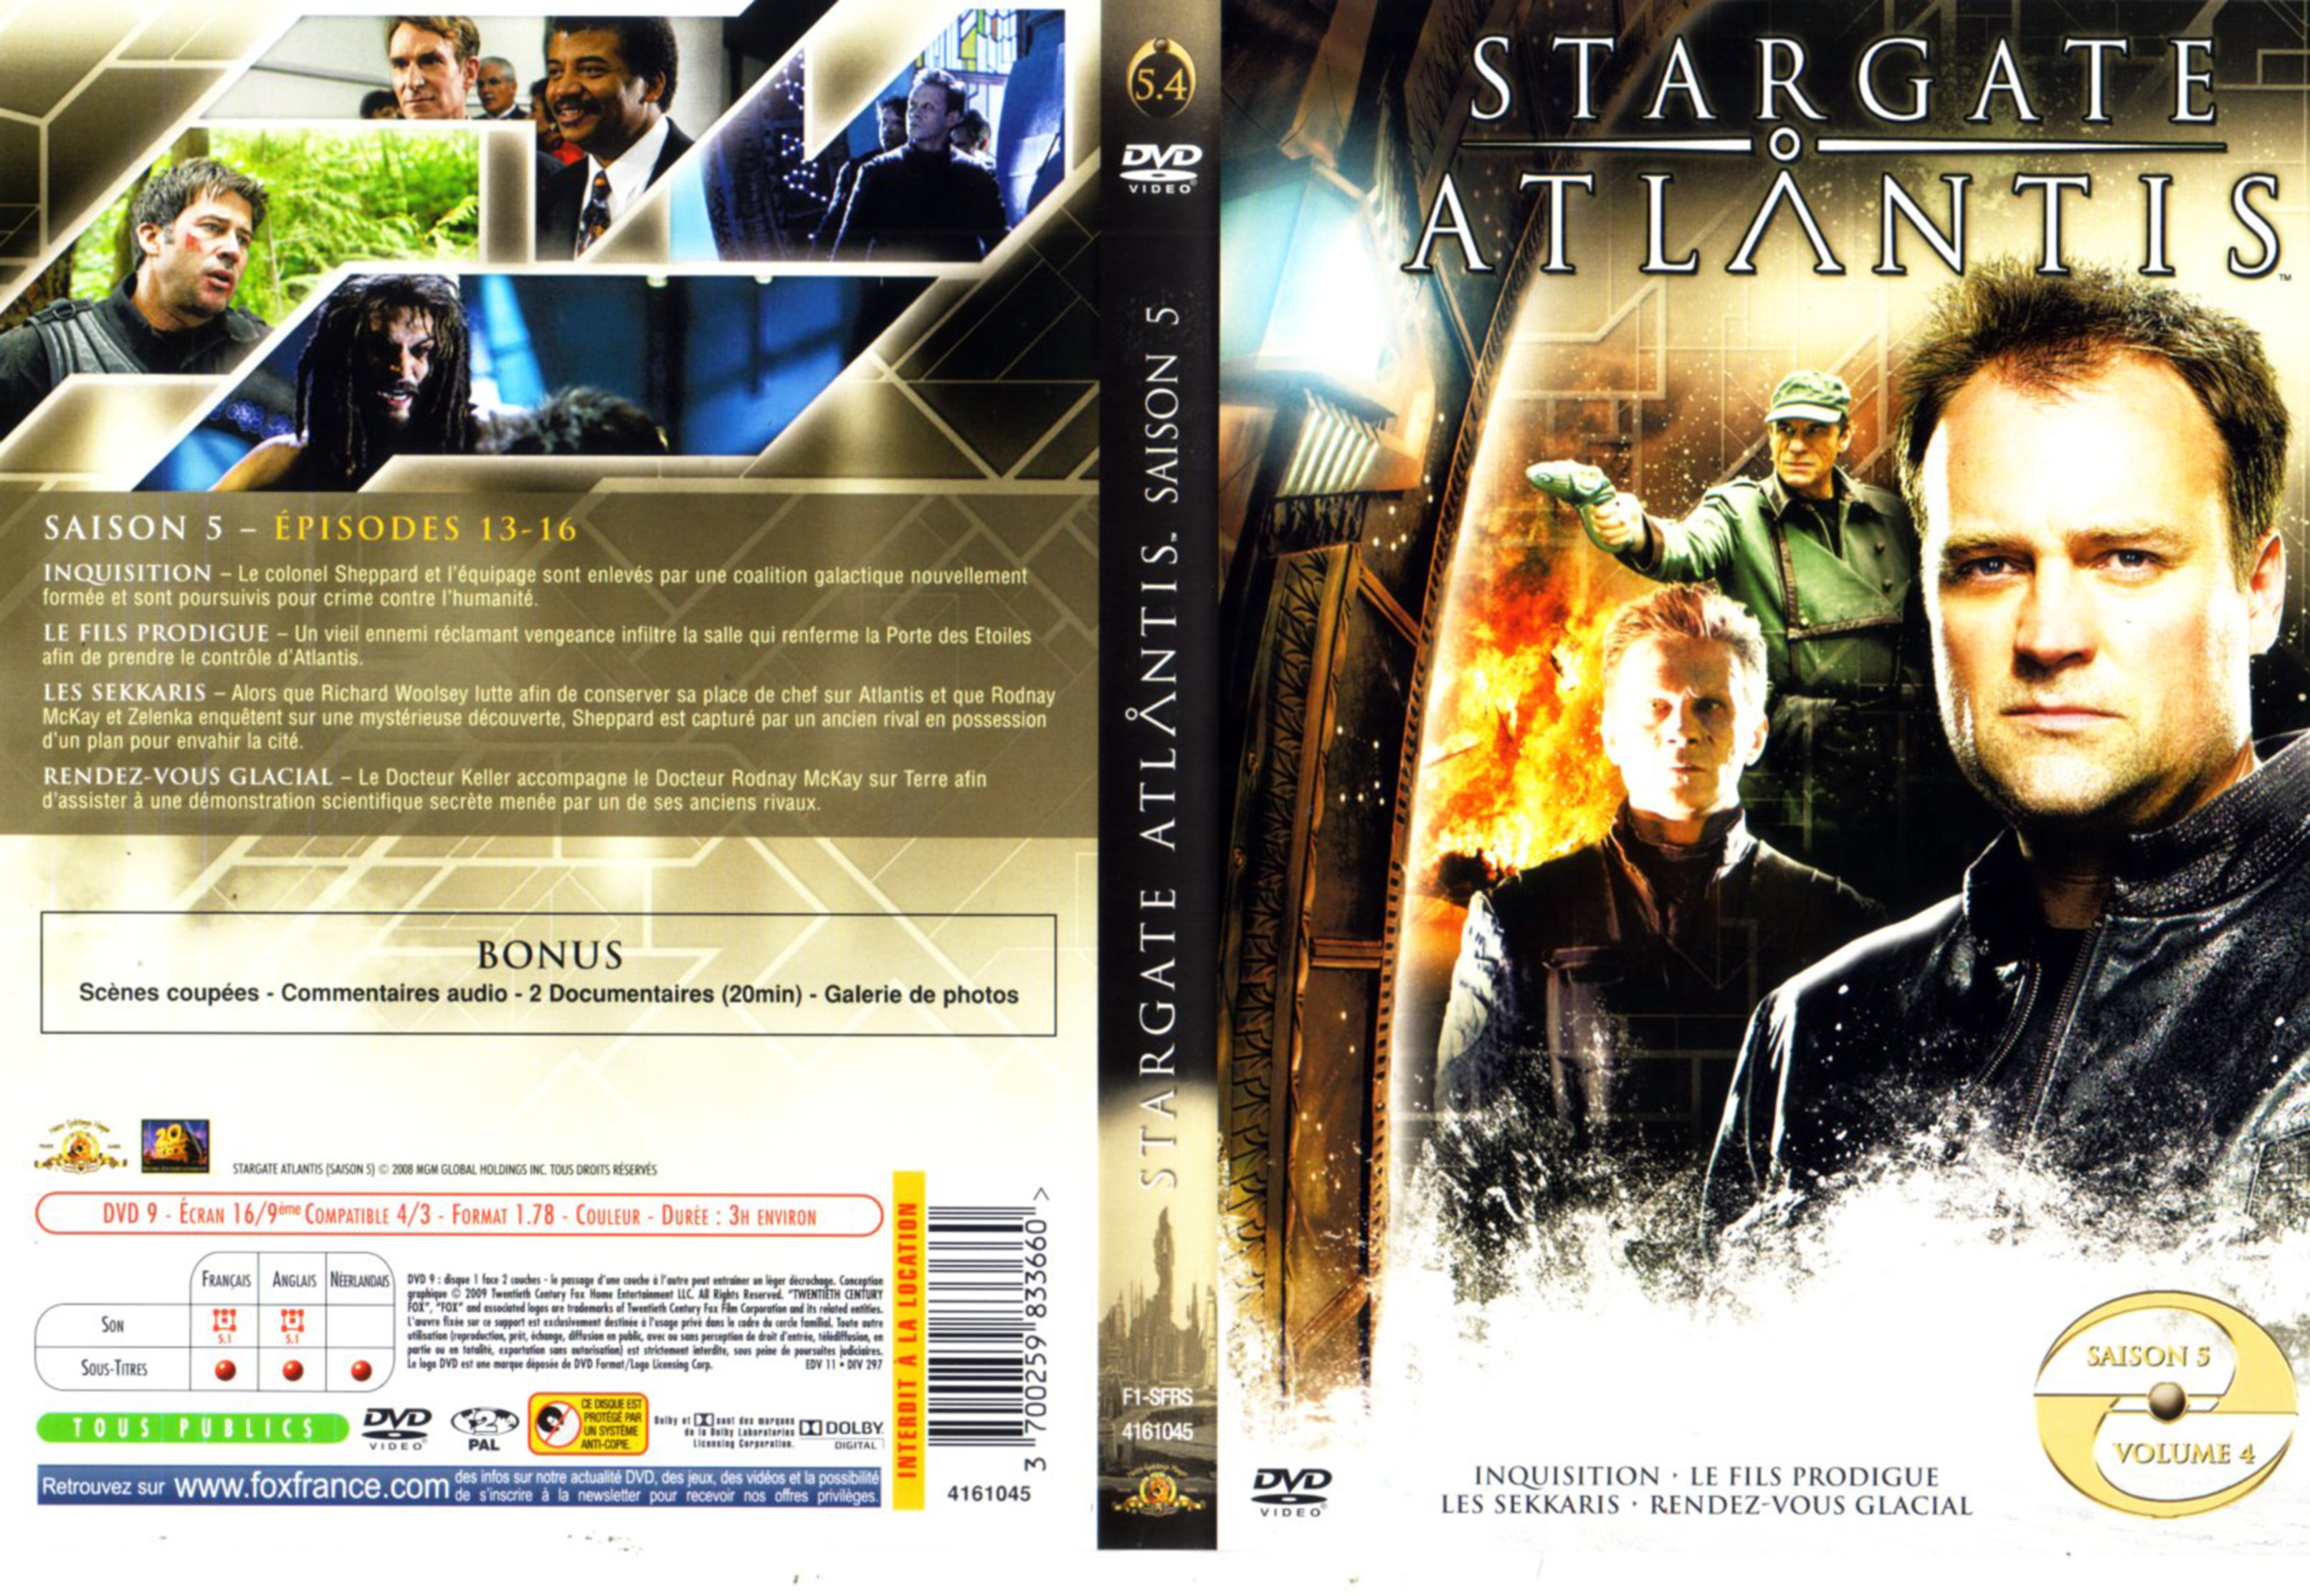 Jaquette DVD Stargate Atlantis Saison 5 DVD 4